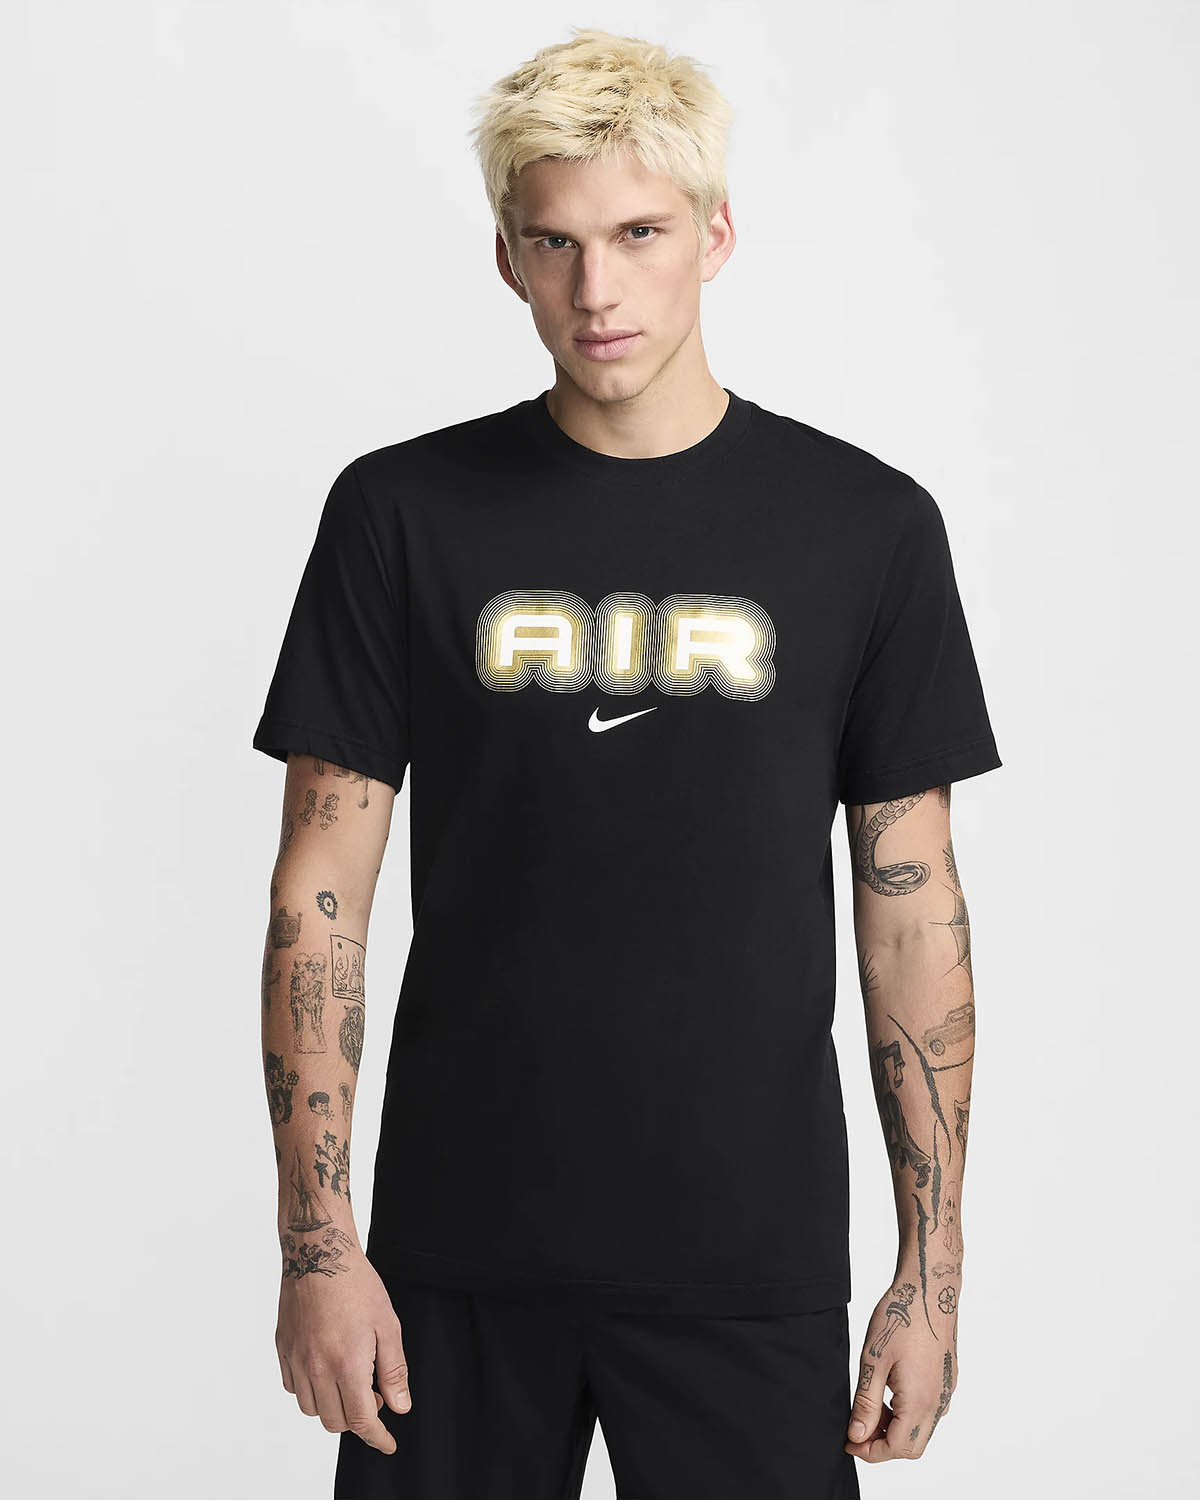 Nike Air T Shirt Black Metallic Gold 1